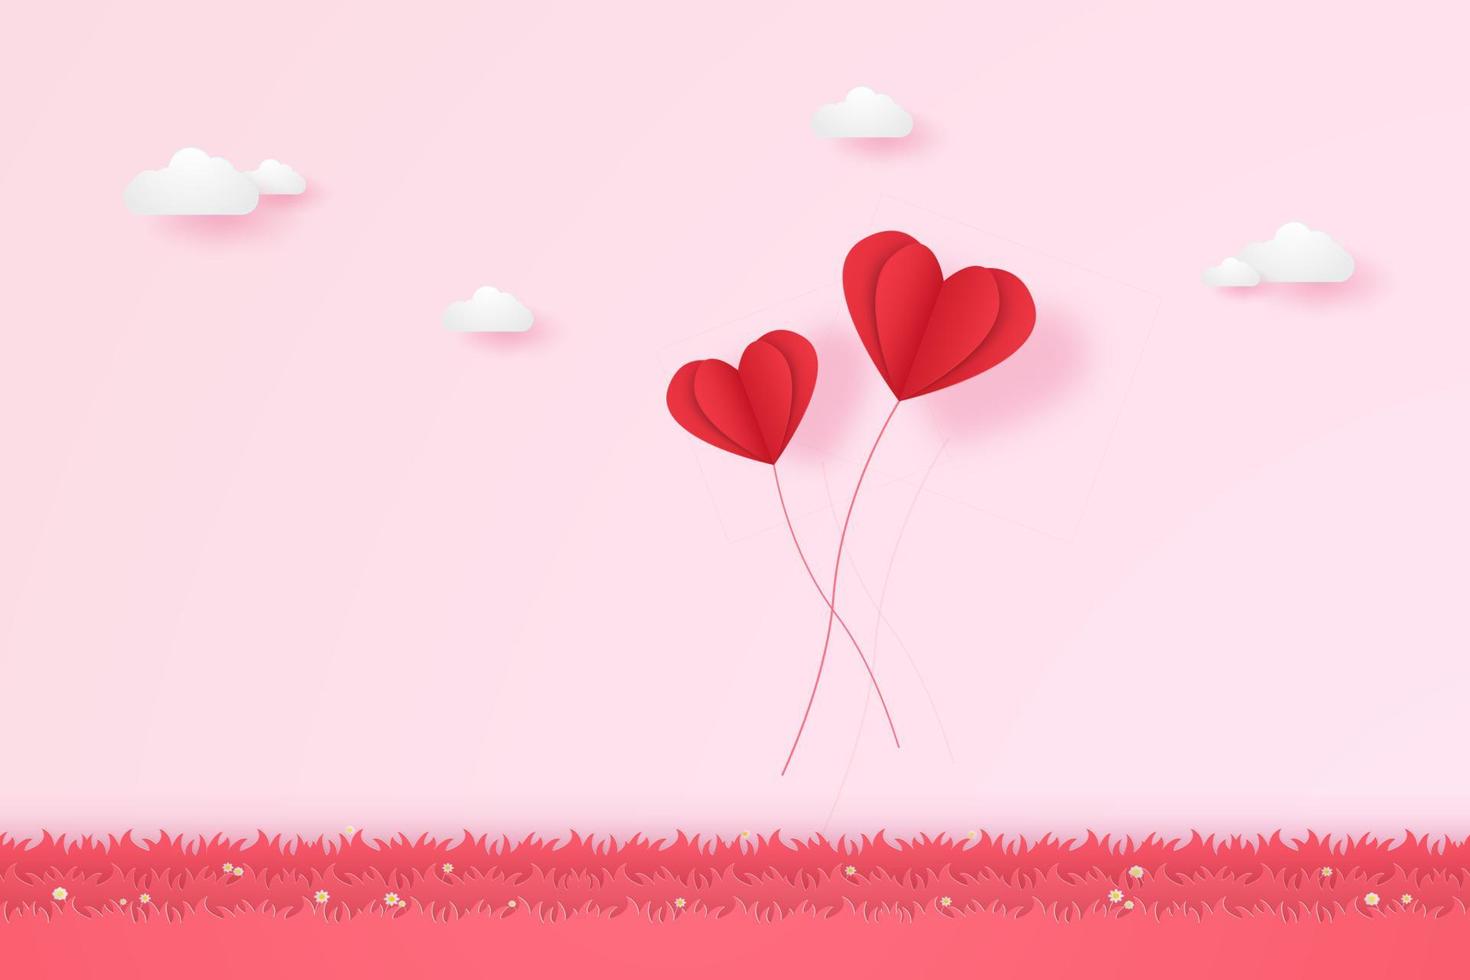 giorno di san valentino, illustrazione dell'amore, palloncini a cuore rosso che volano sull'erba, stile di arte della carta vettore